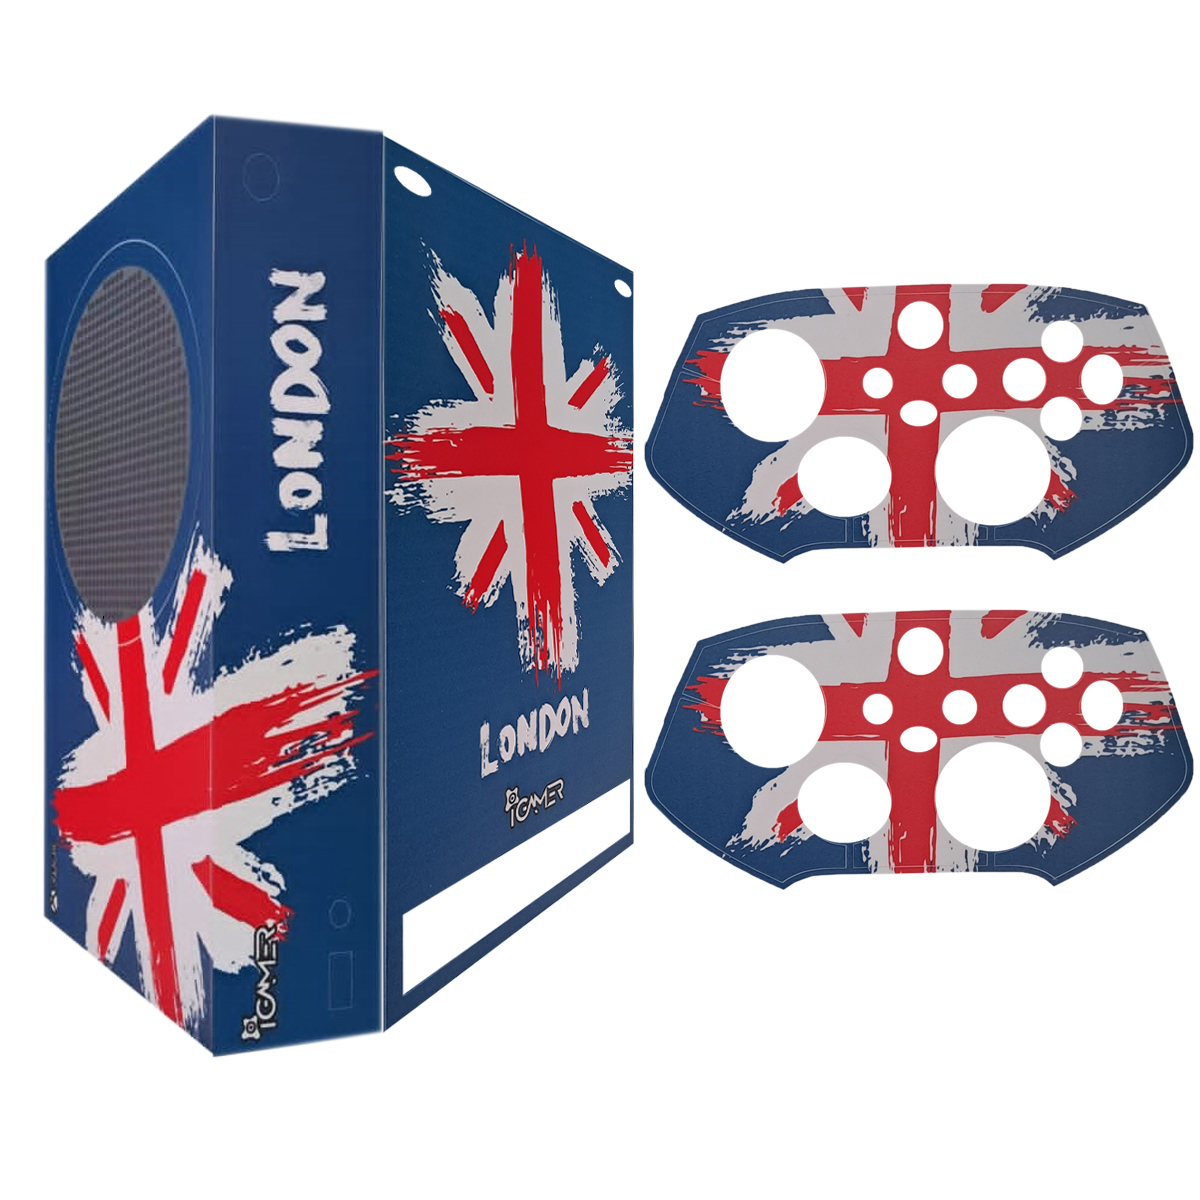 برچسب کنسول بازی ایکس باکس Series S آیگیمر طرح لندن مدل Skins0011 مجموعه 3 عددی